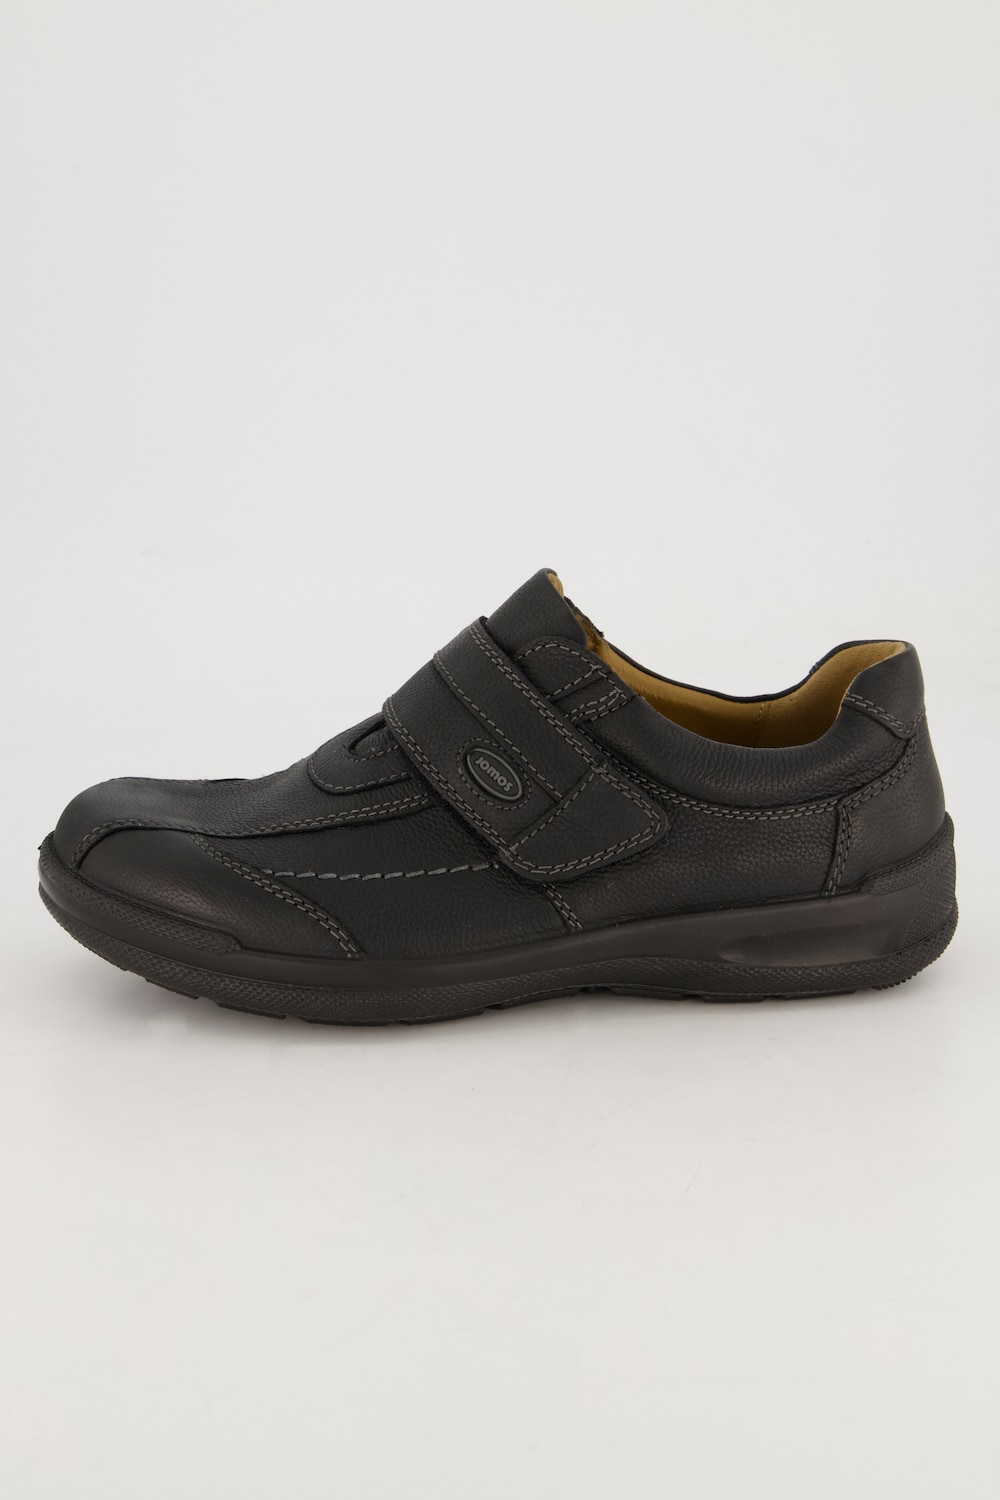 Grote Maten Loafers, Heren, zwart, Maat: 45, Leer, JP1880